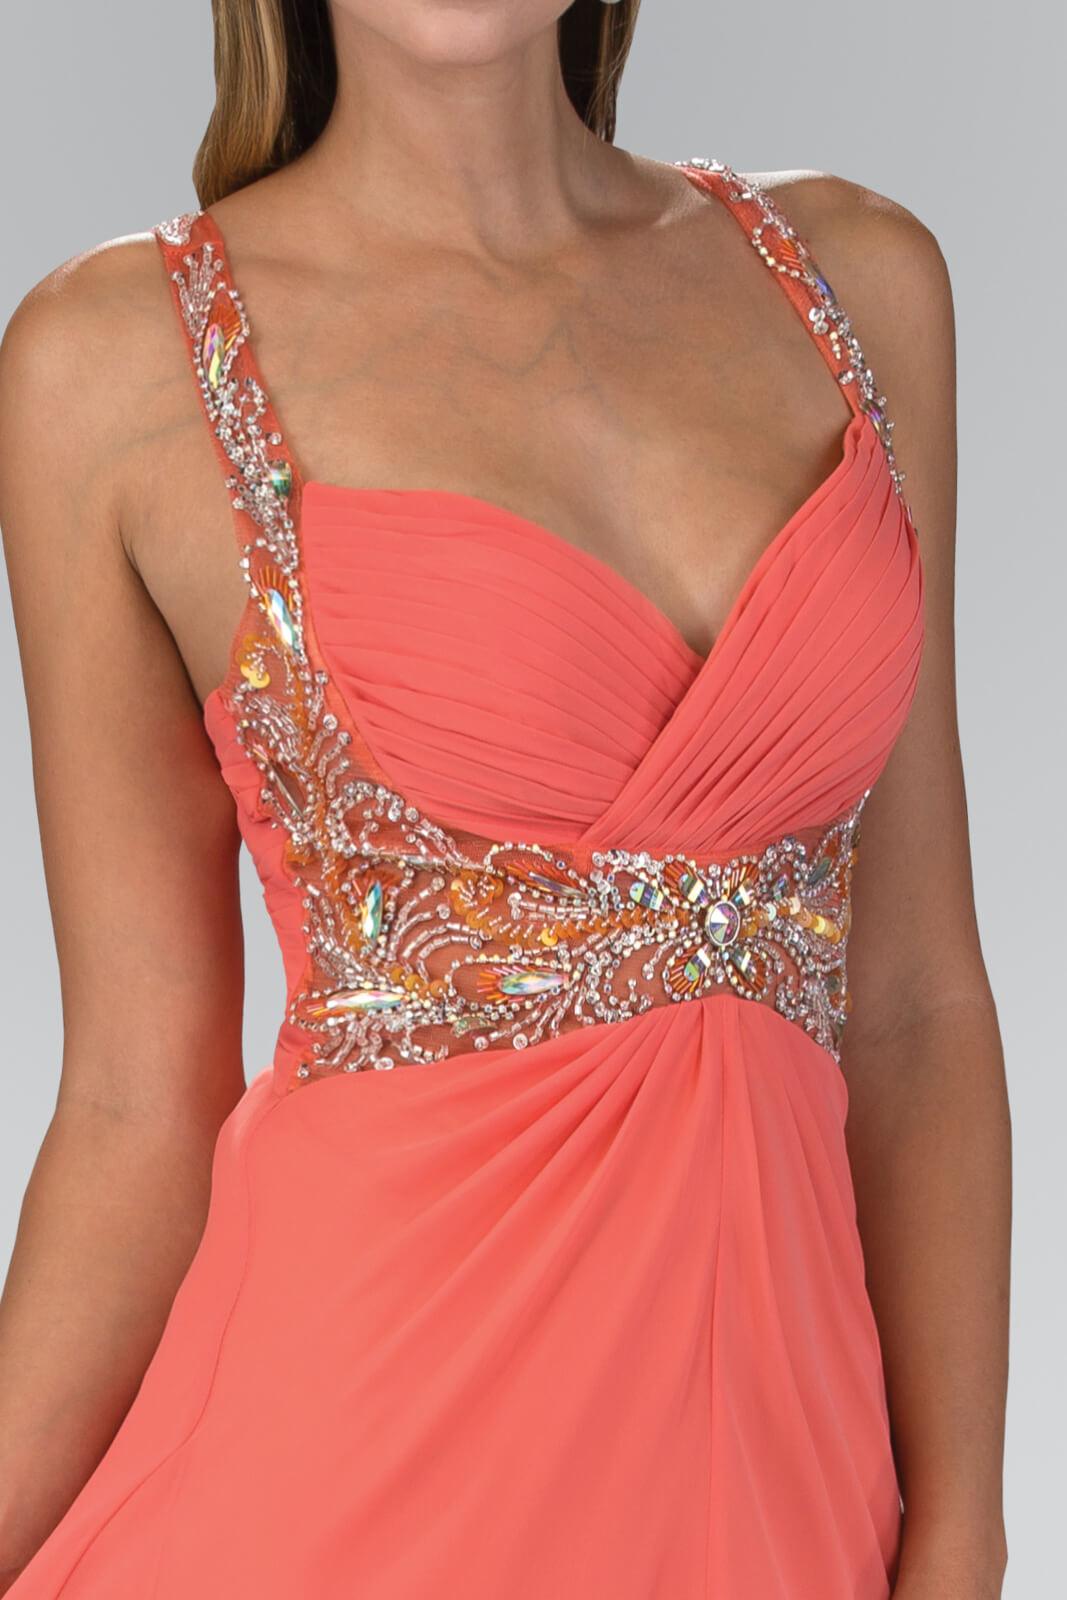 Jewel Embellished Chiffon Long Prom Dress Formal - The Dress Outlet Elizabeth K